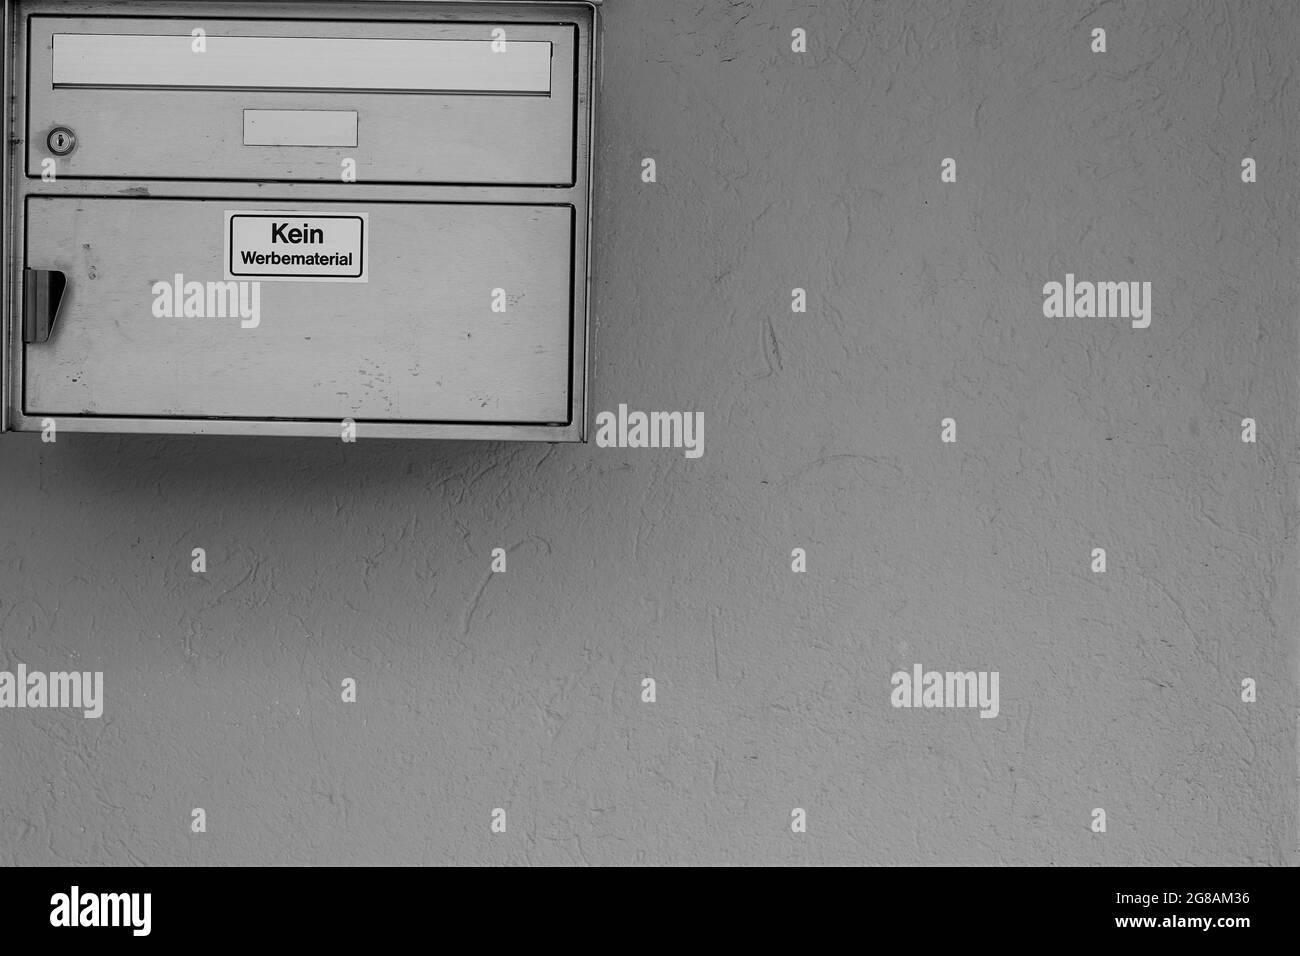 Schweizer Briefkasten an einer Hauswand installiert. Auf einem Aufkleber in deutscher Sprache steht, dass es keine Werbemittel gibt. Es gibt viel Platz für Kopien. Stockfoto